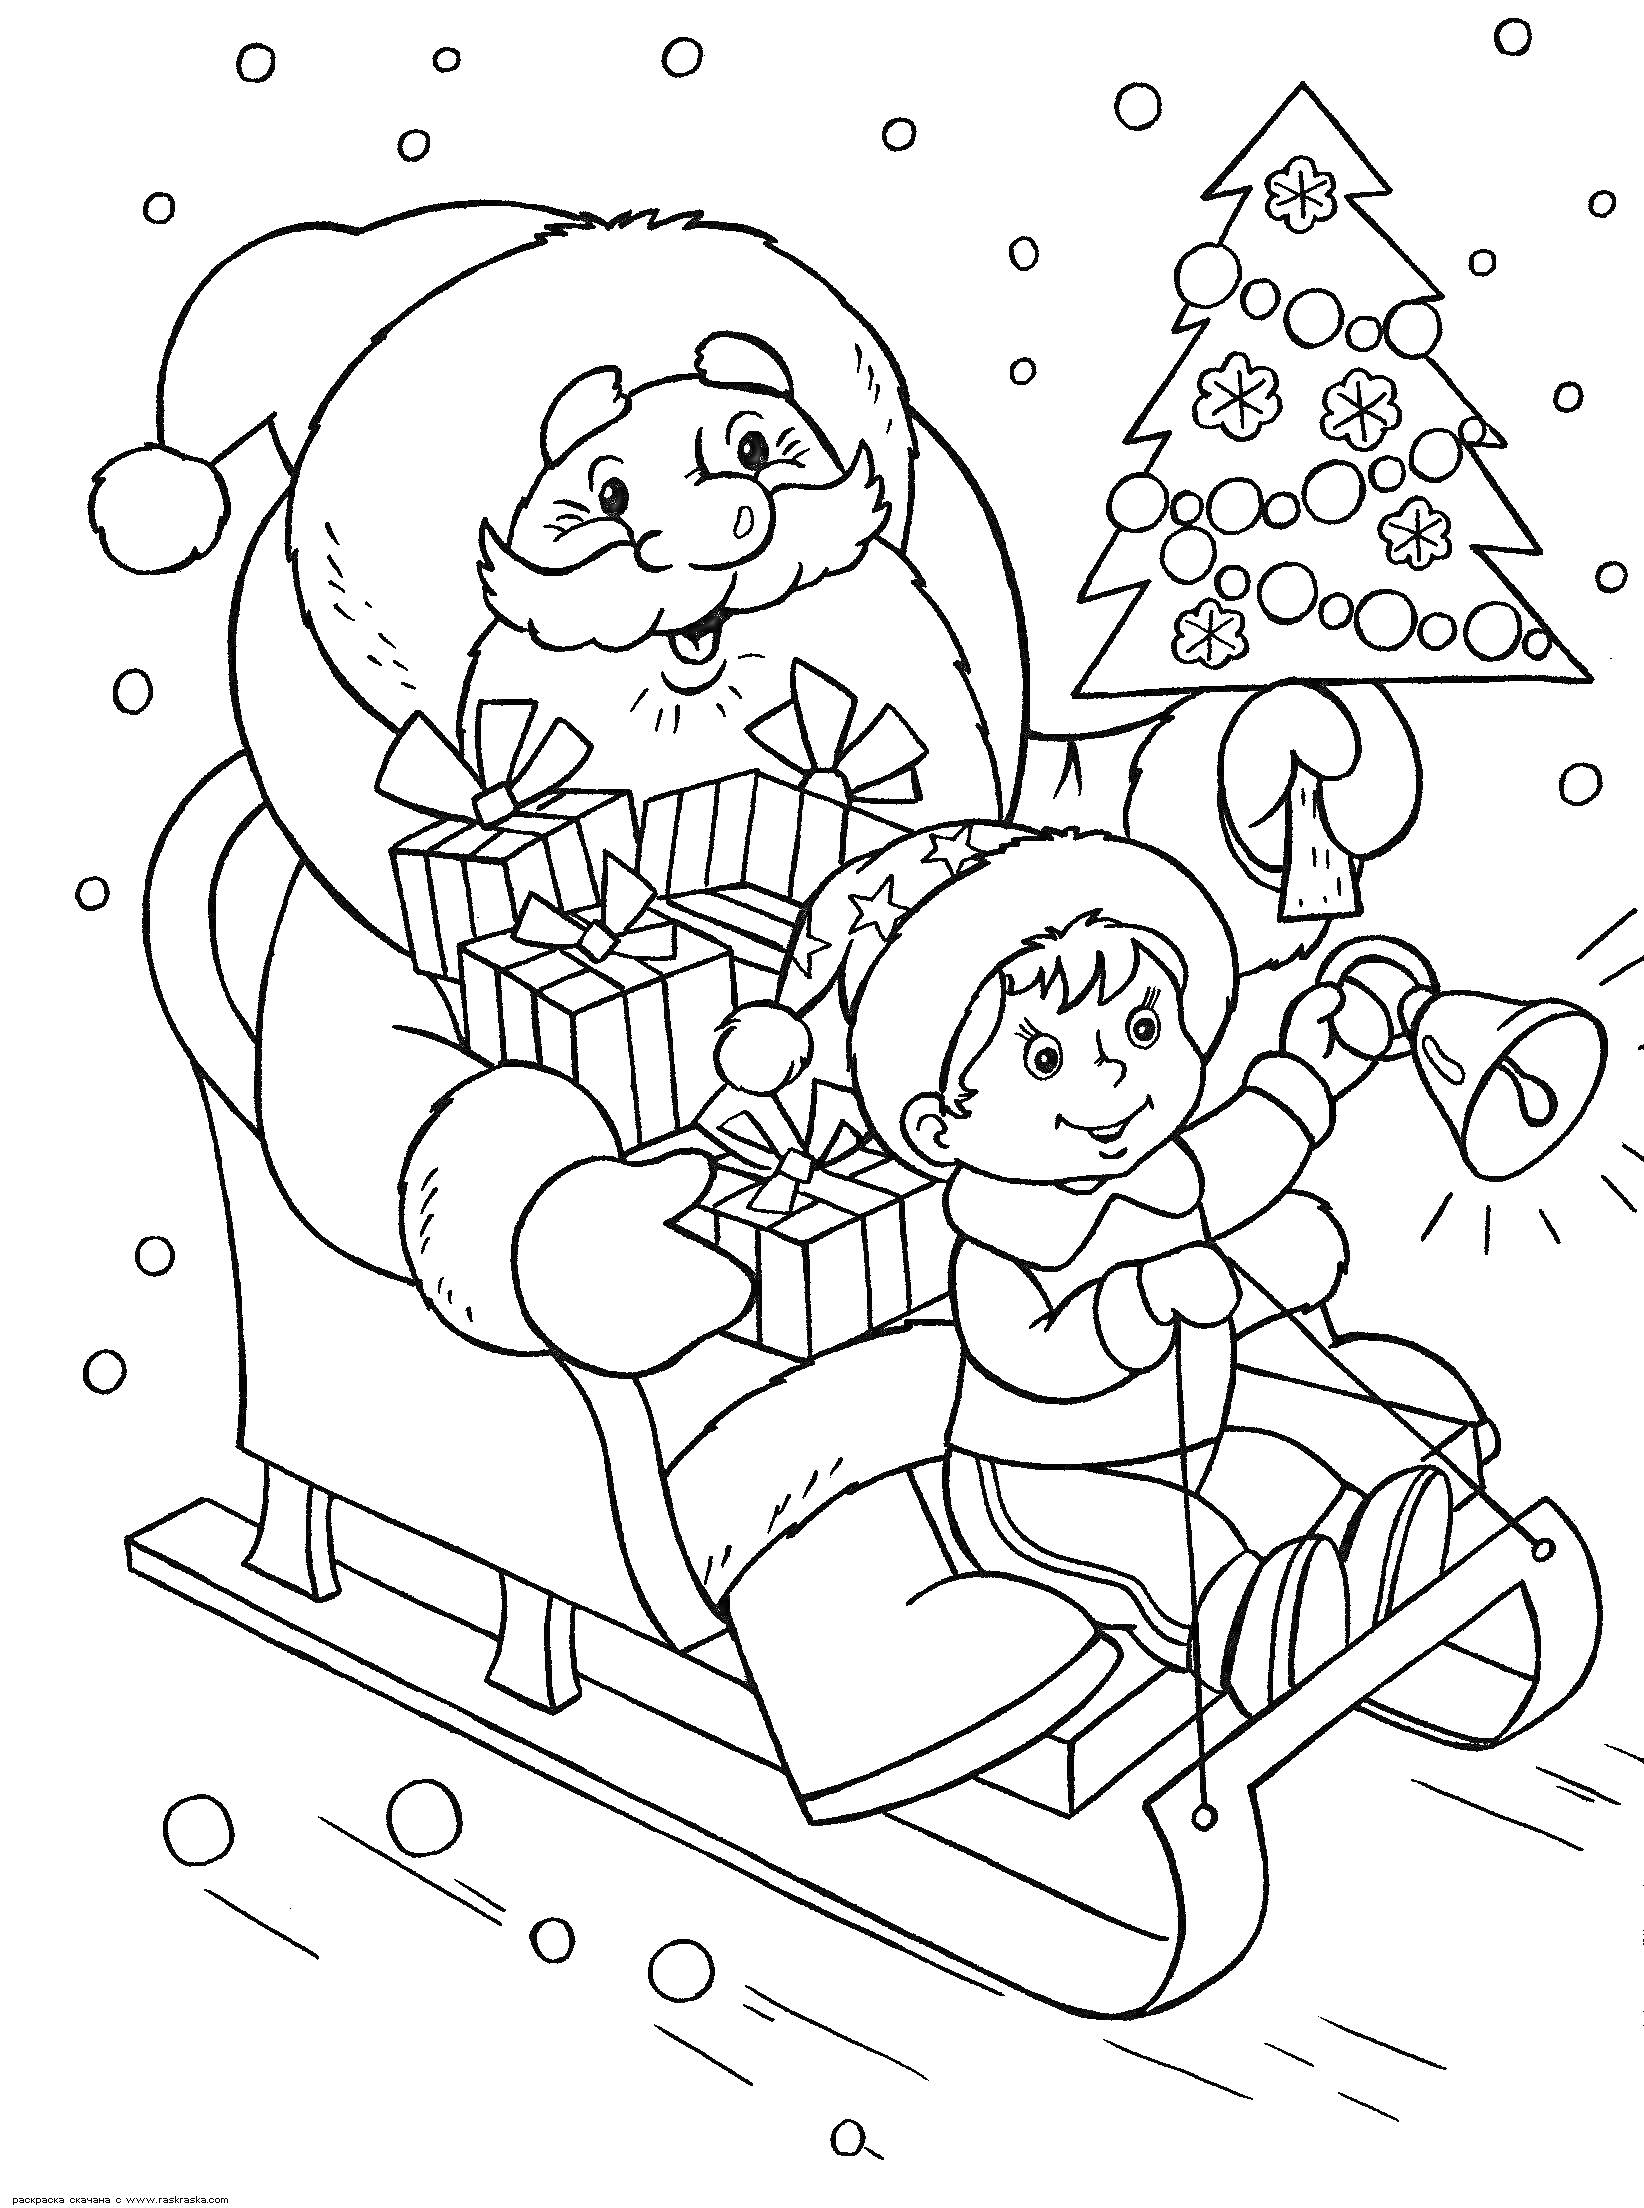 Раскраска Дед Мороз с подарками и ребенок с колокольчиком на санях в новогоднюю ночь